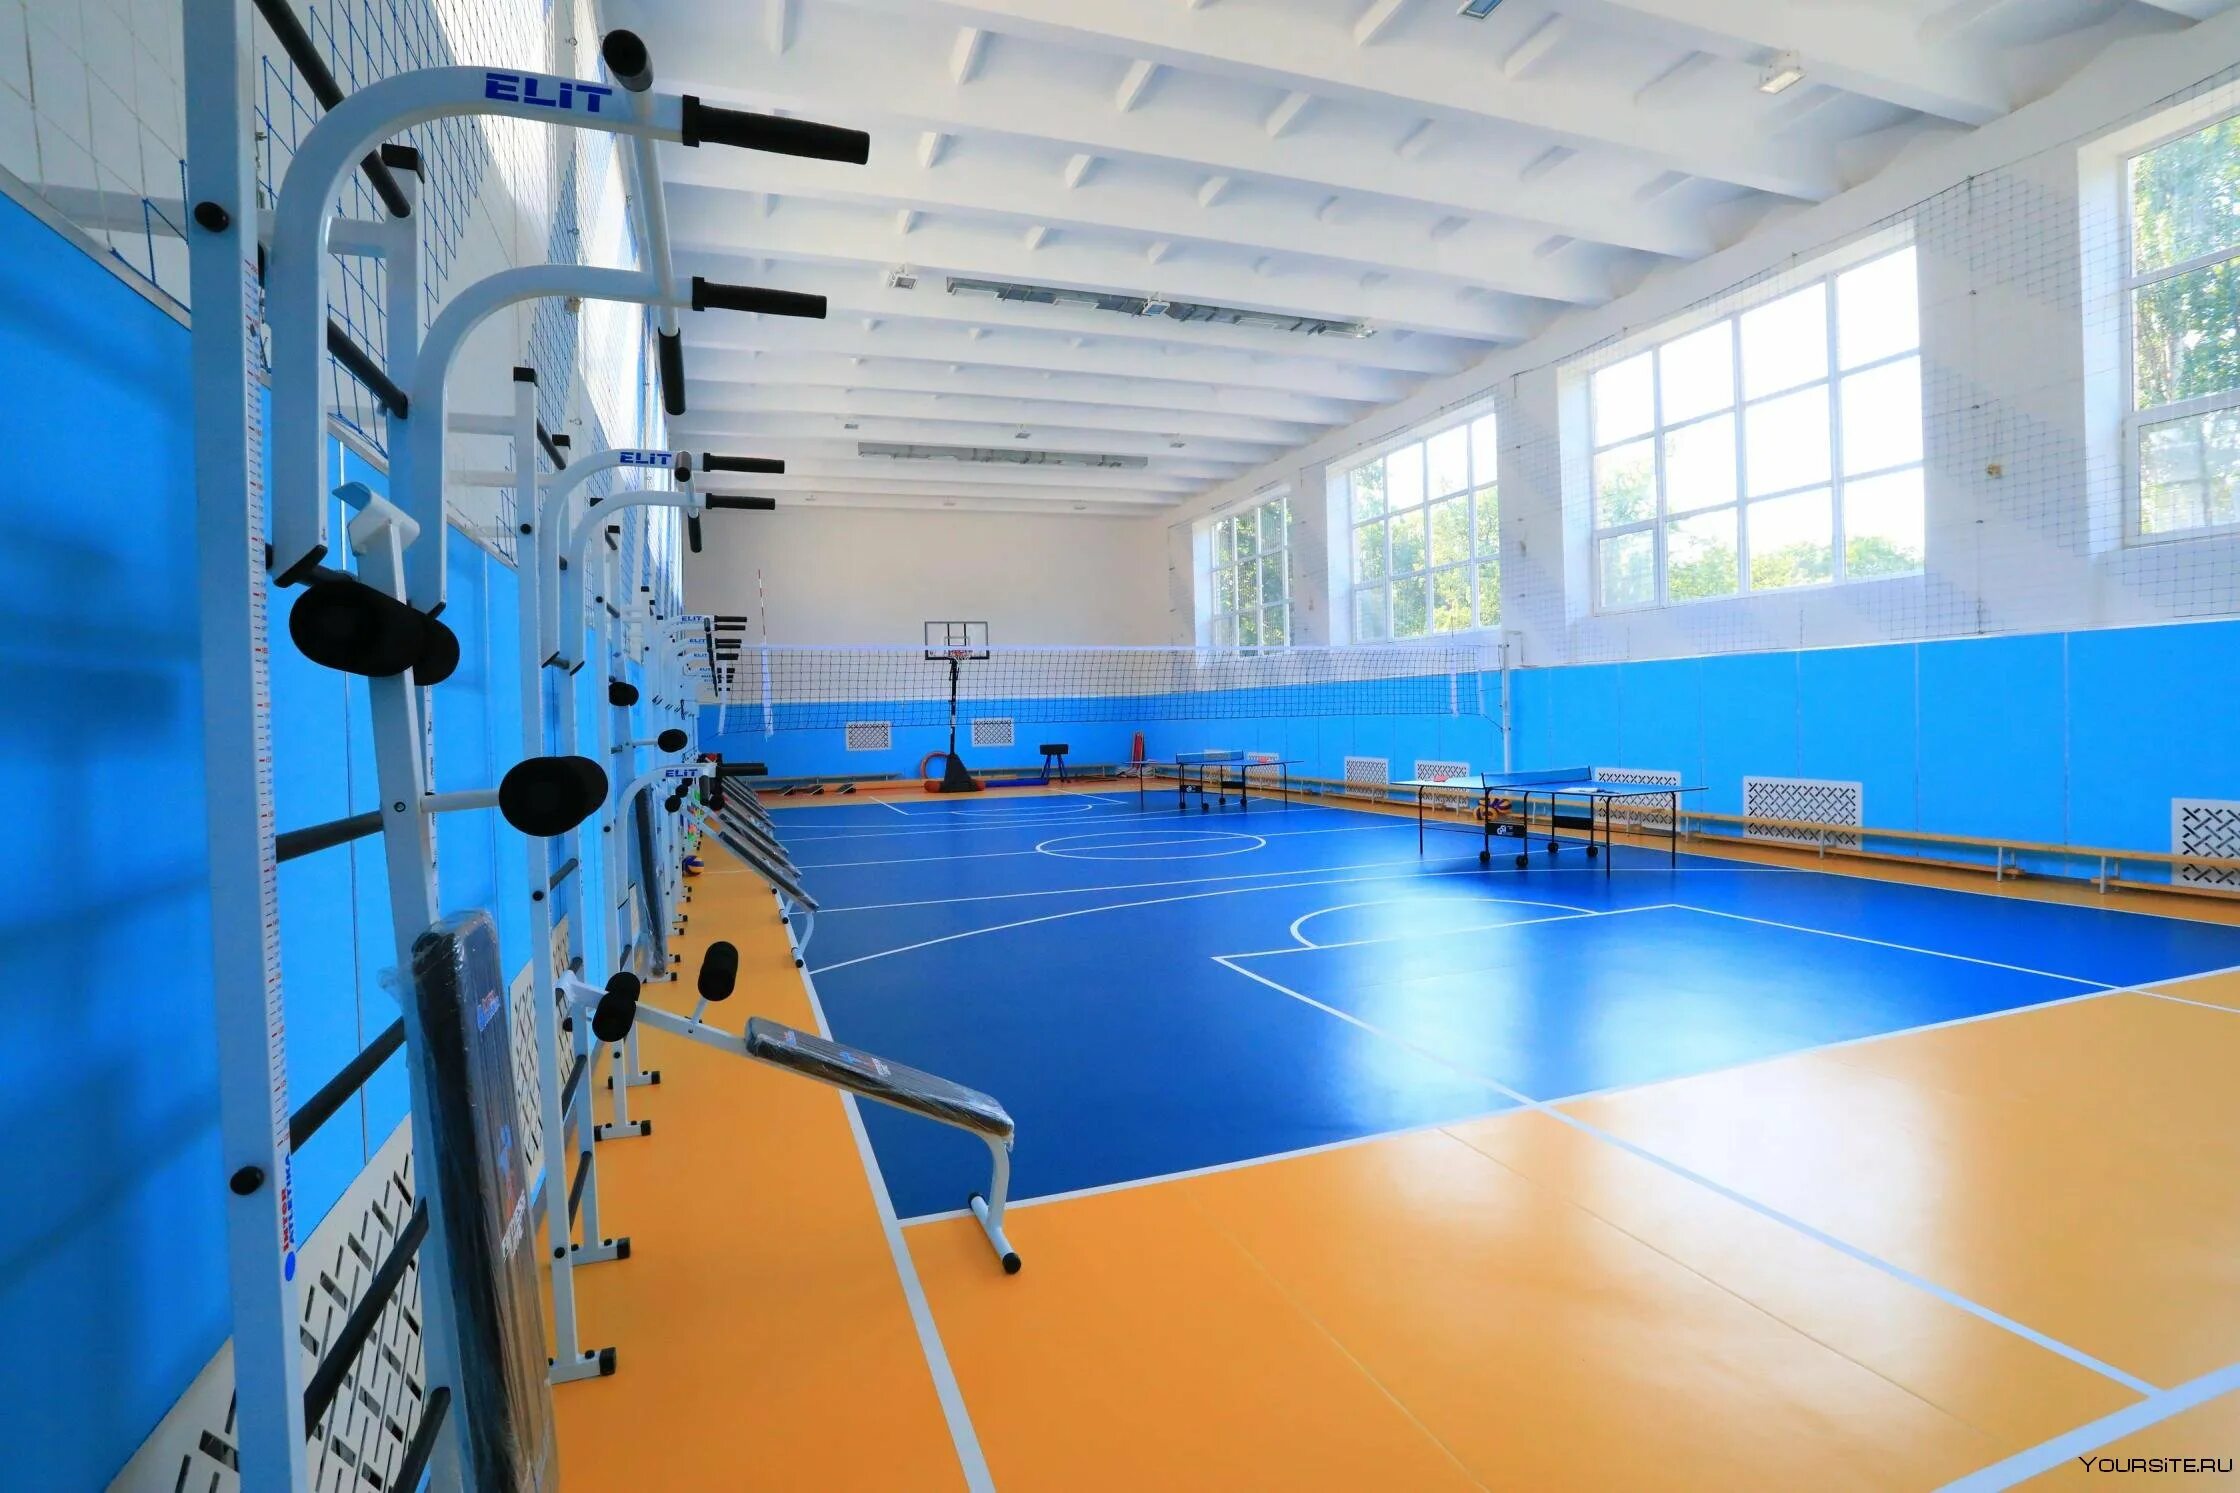 Иркутск 17 школа спорт зал. Спортивный зал. Школьный спортивный зал. Спортивный зал в школе. Красивые спортивные залы